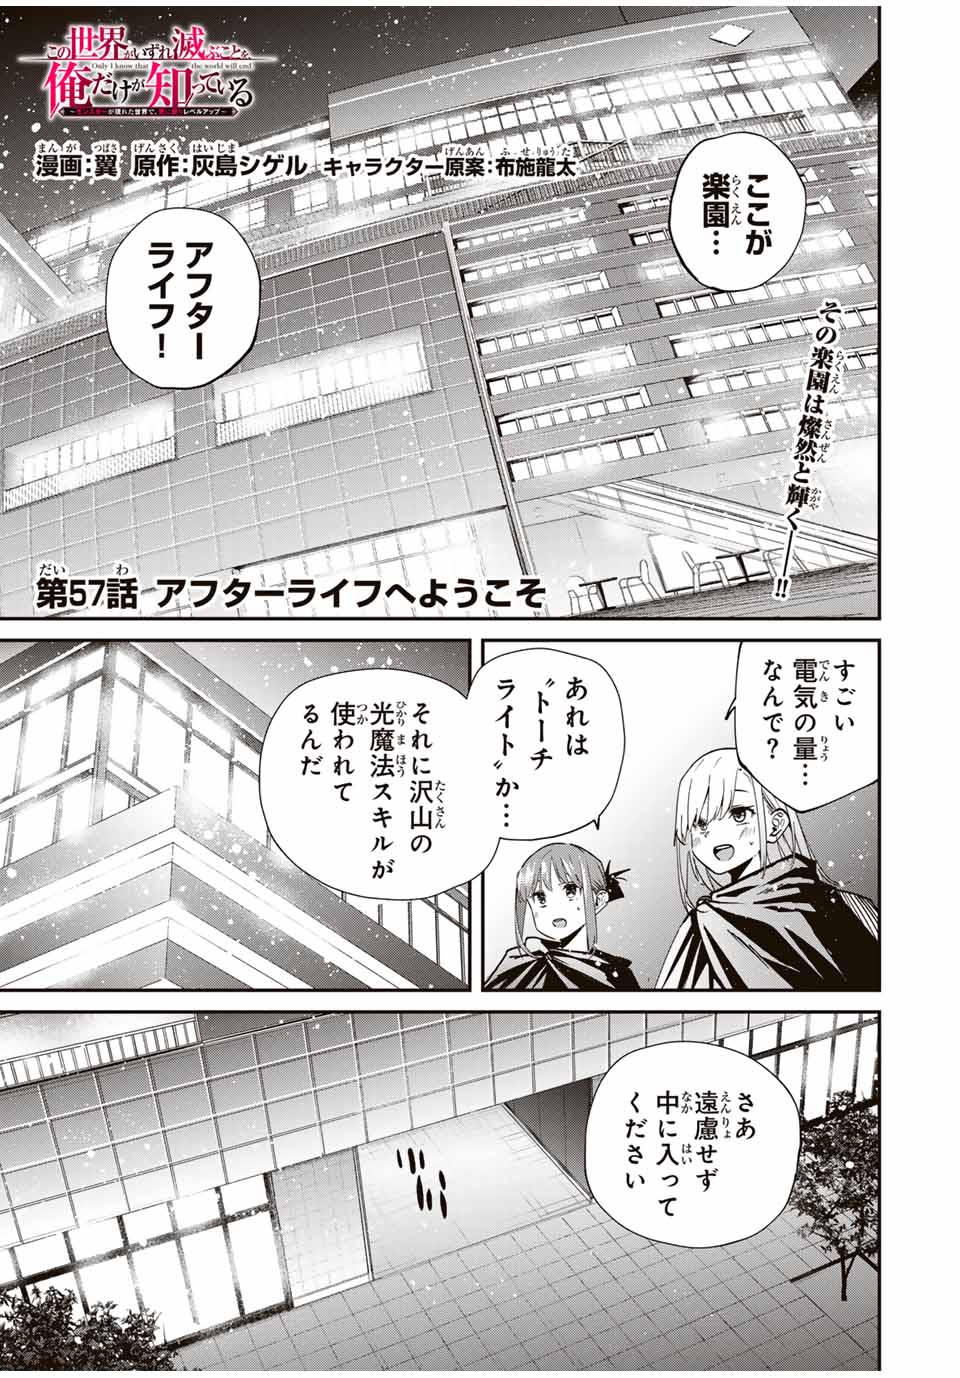 Kono Sekai ga Izure Horobu Koto wo, Ore dake ga Shitte Iru - Chapter 57 - Page 1